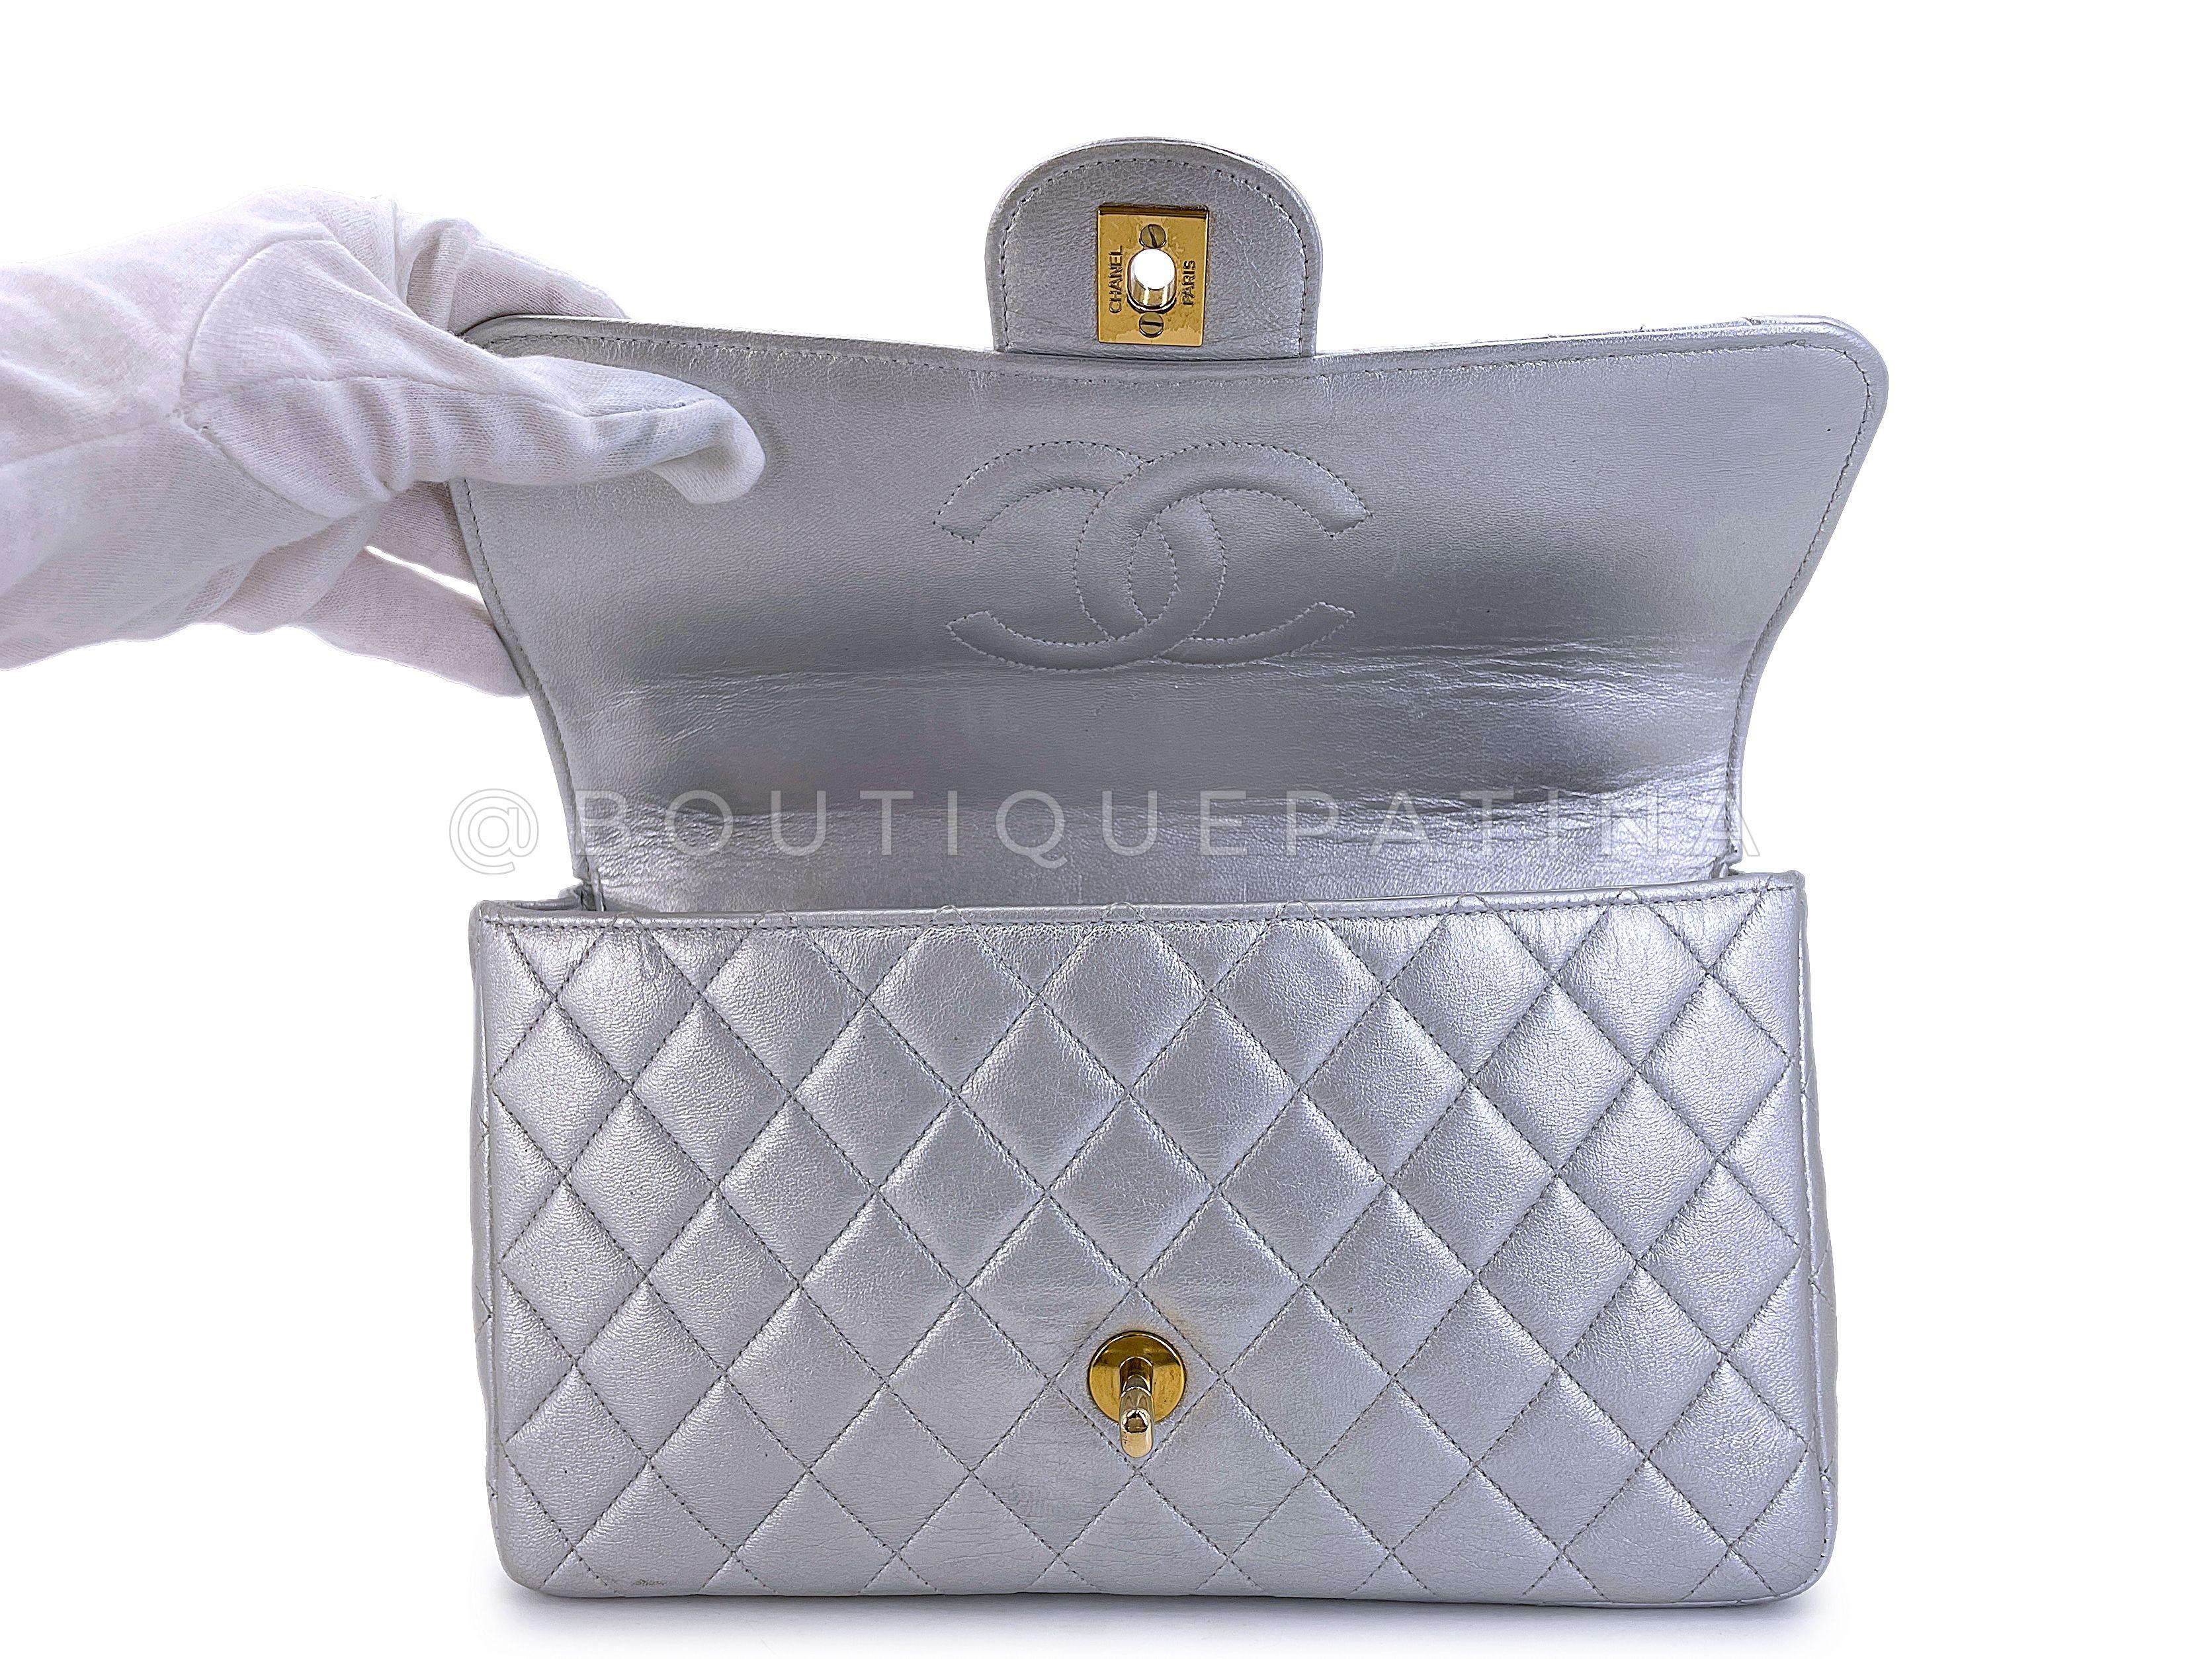 Chanel 1994 Vintage Silver Parent-Child Kelly Flap Bag 24k GHW 67595 For Sale 5